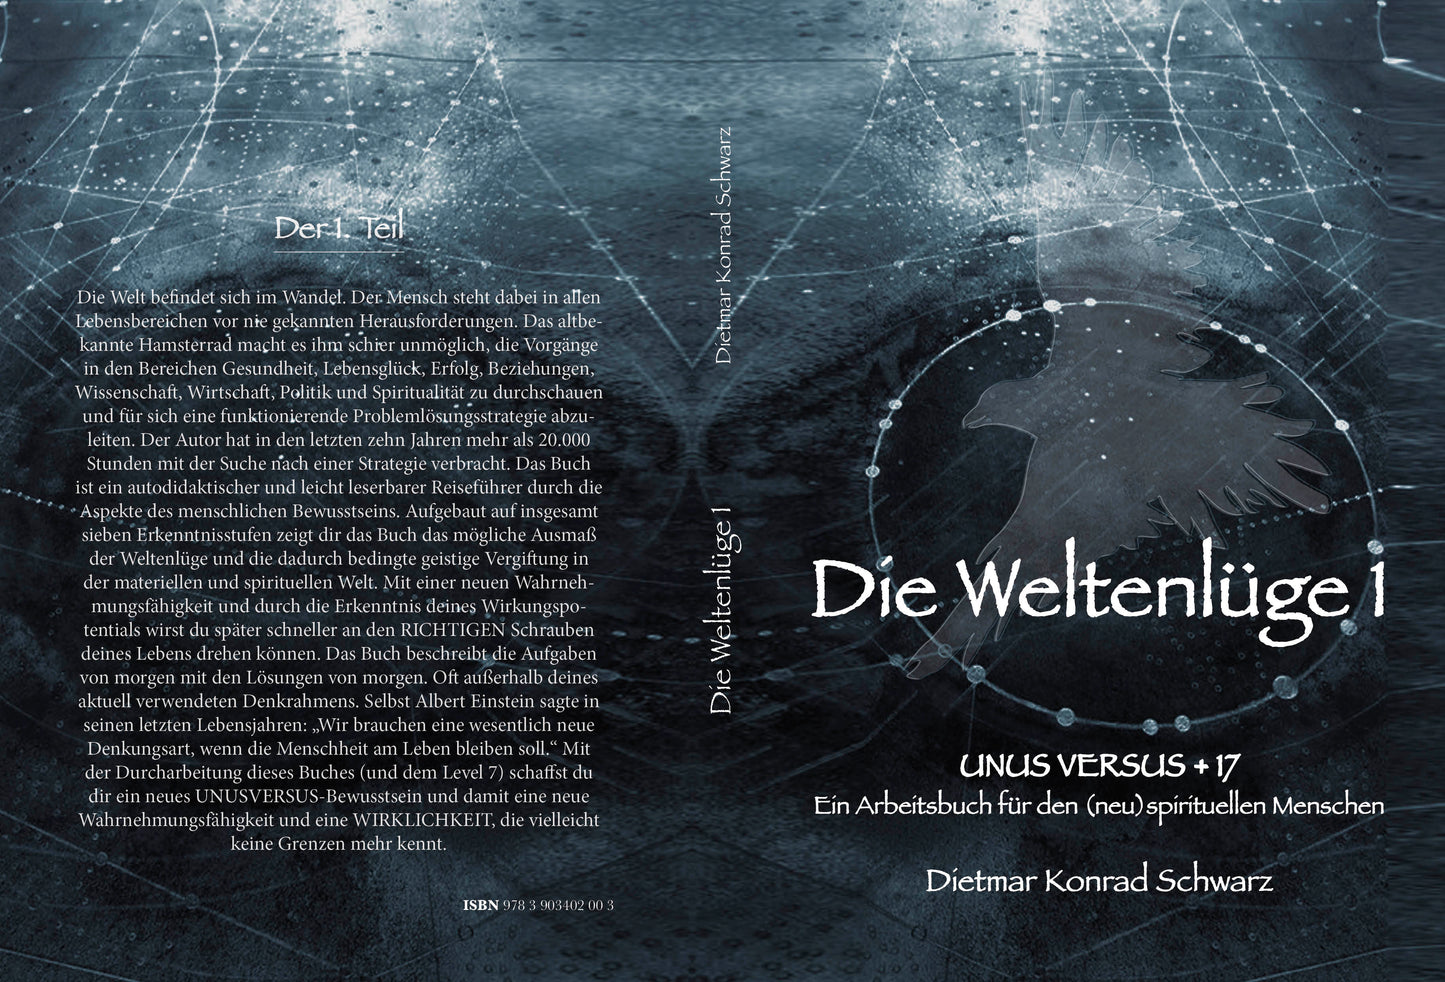 Main work "Die Weltenlüge 1" in the reading evening edition